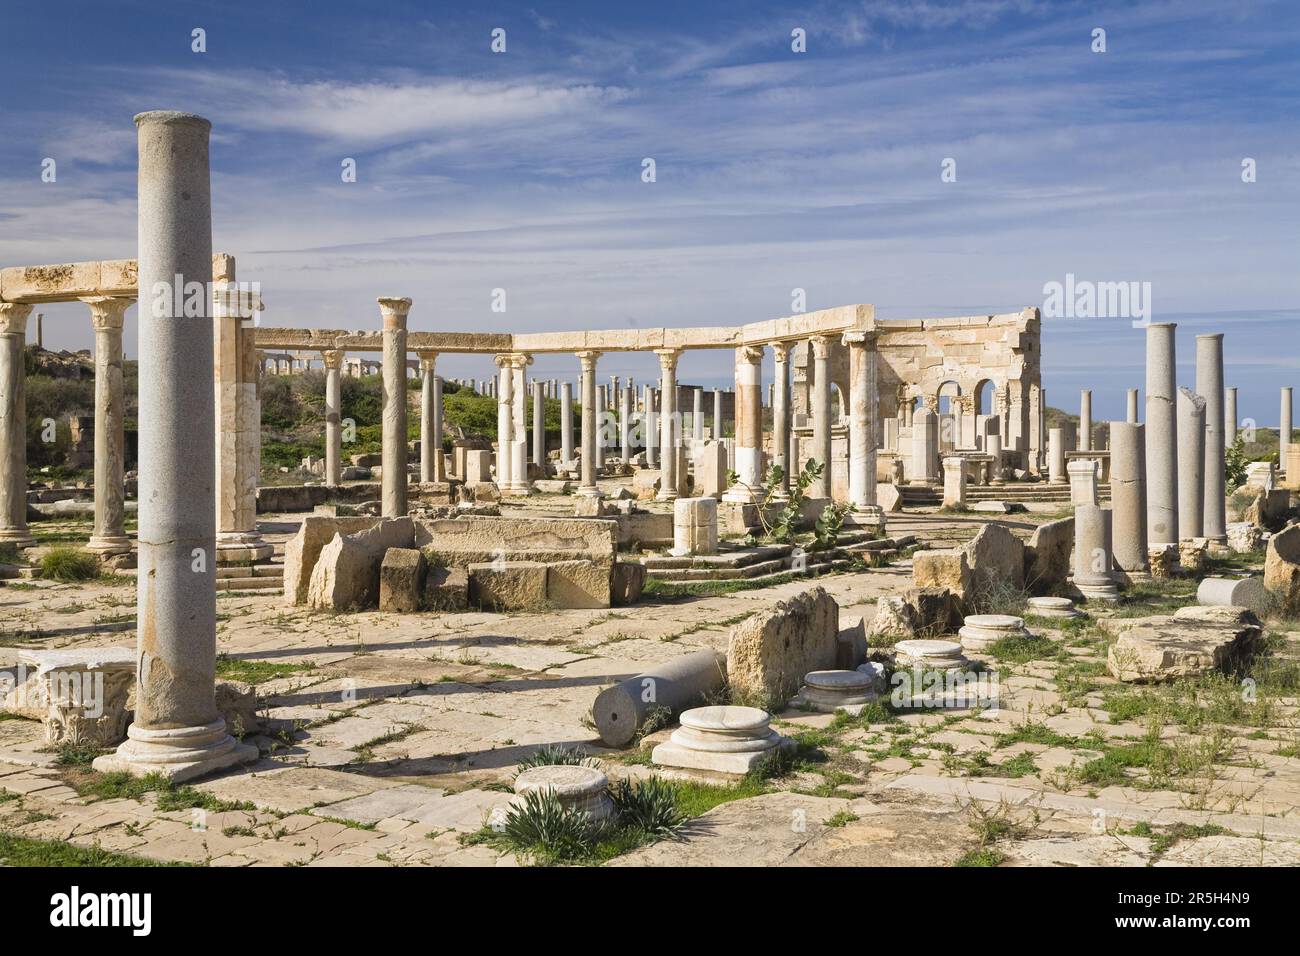 Punic market, ruined city of Leptis Magna, Libya Stock Photo